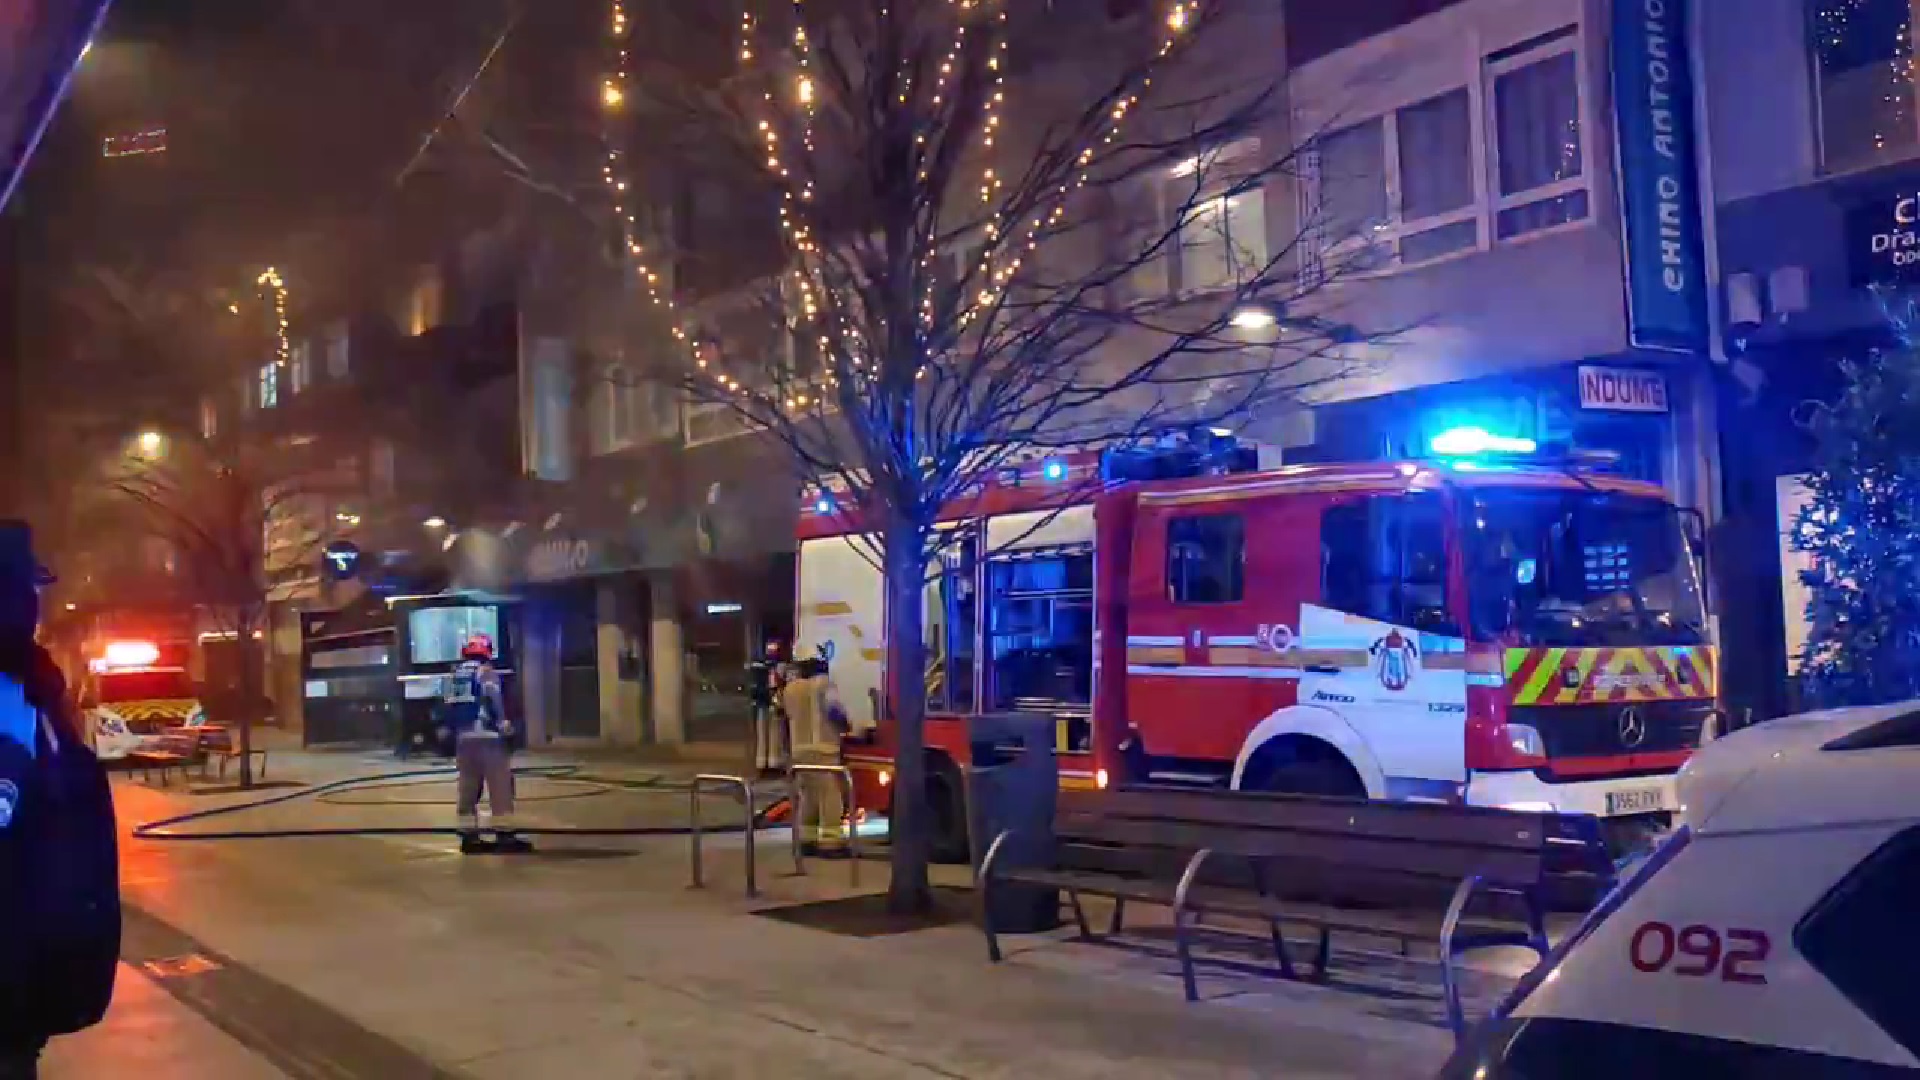 La intervención de los bomberos en el Chino Antonio de la calle Barcelona, en A Coruña | @ELOYTP